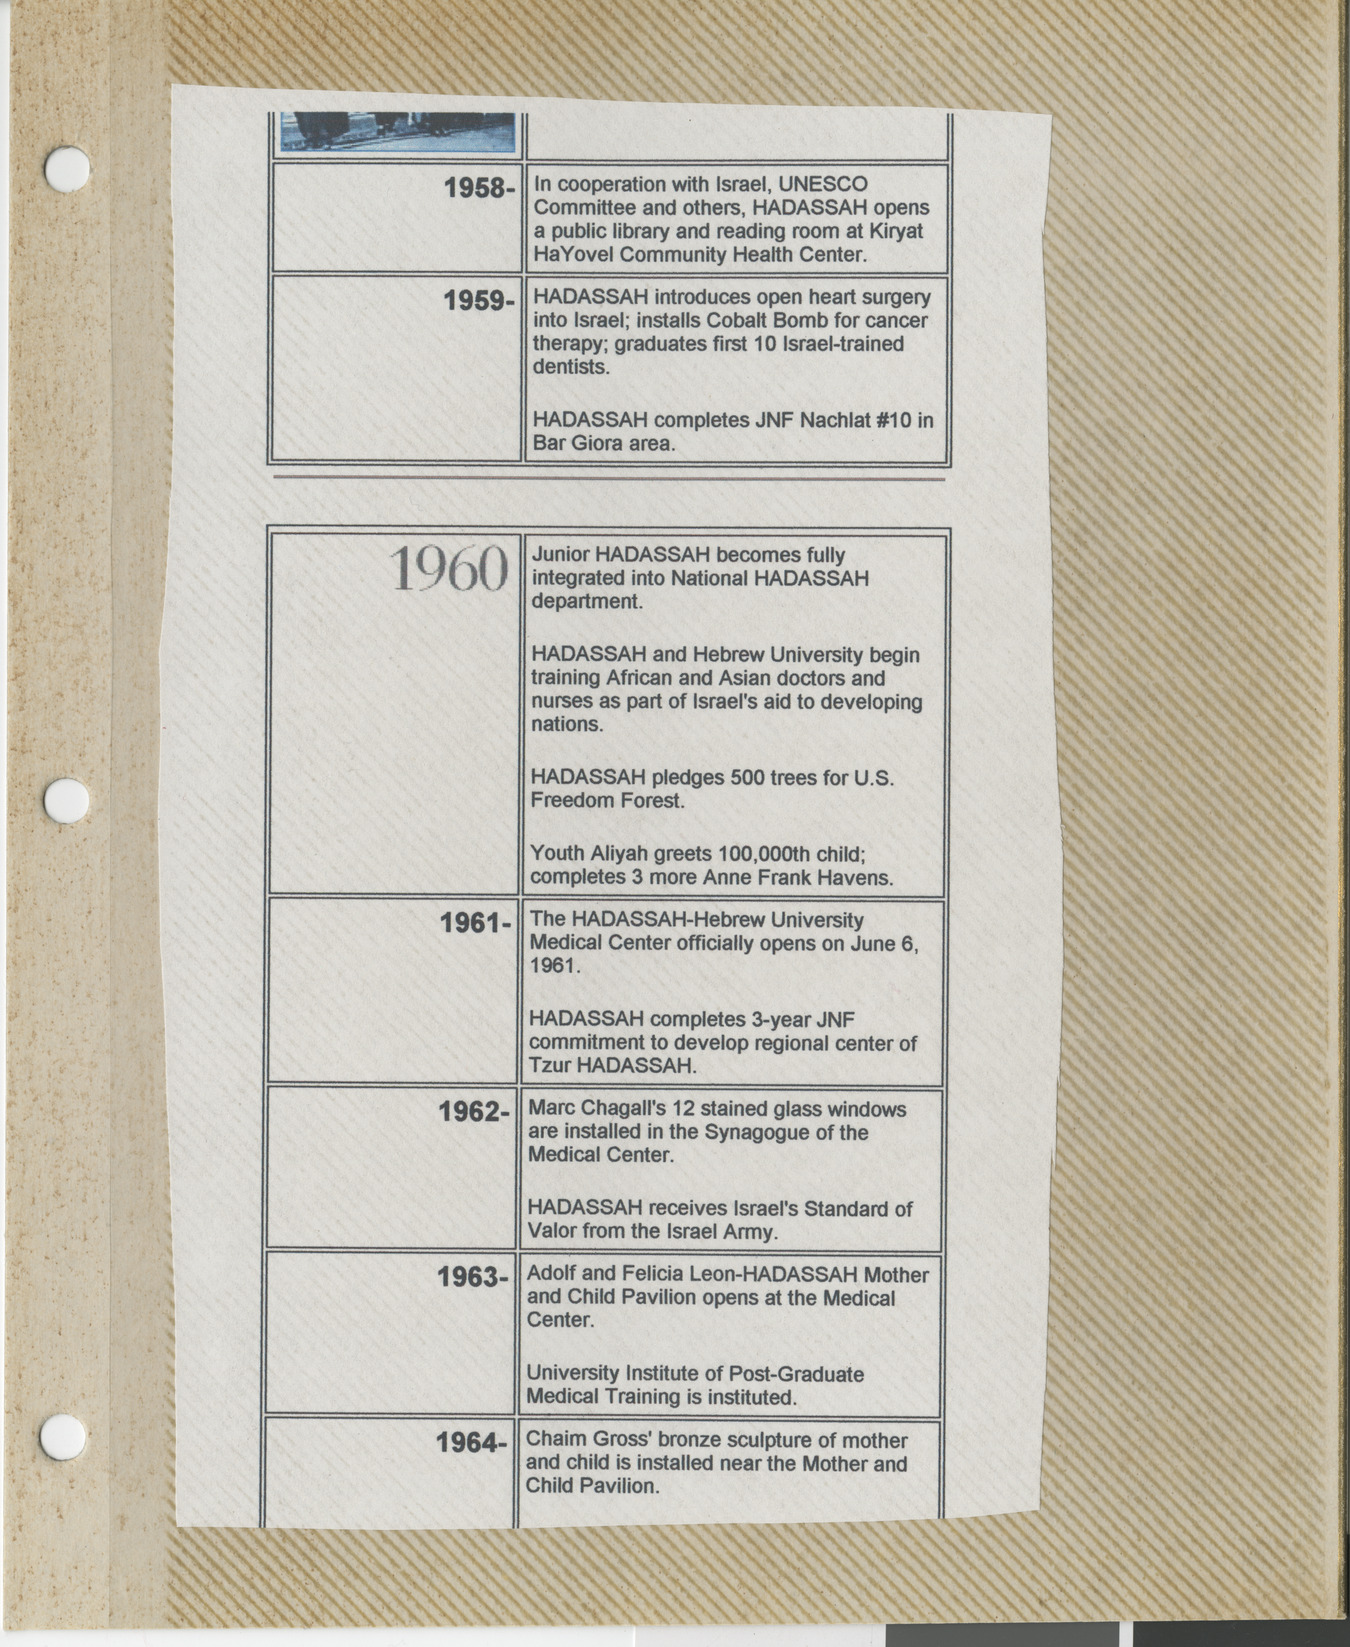 Clipping, Hadassah timeline 1958-1964